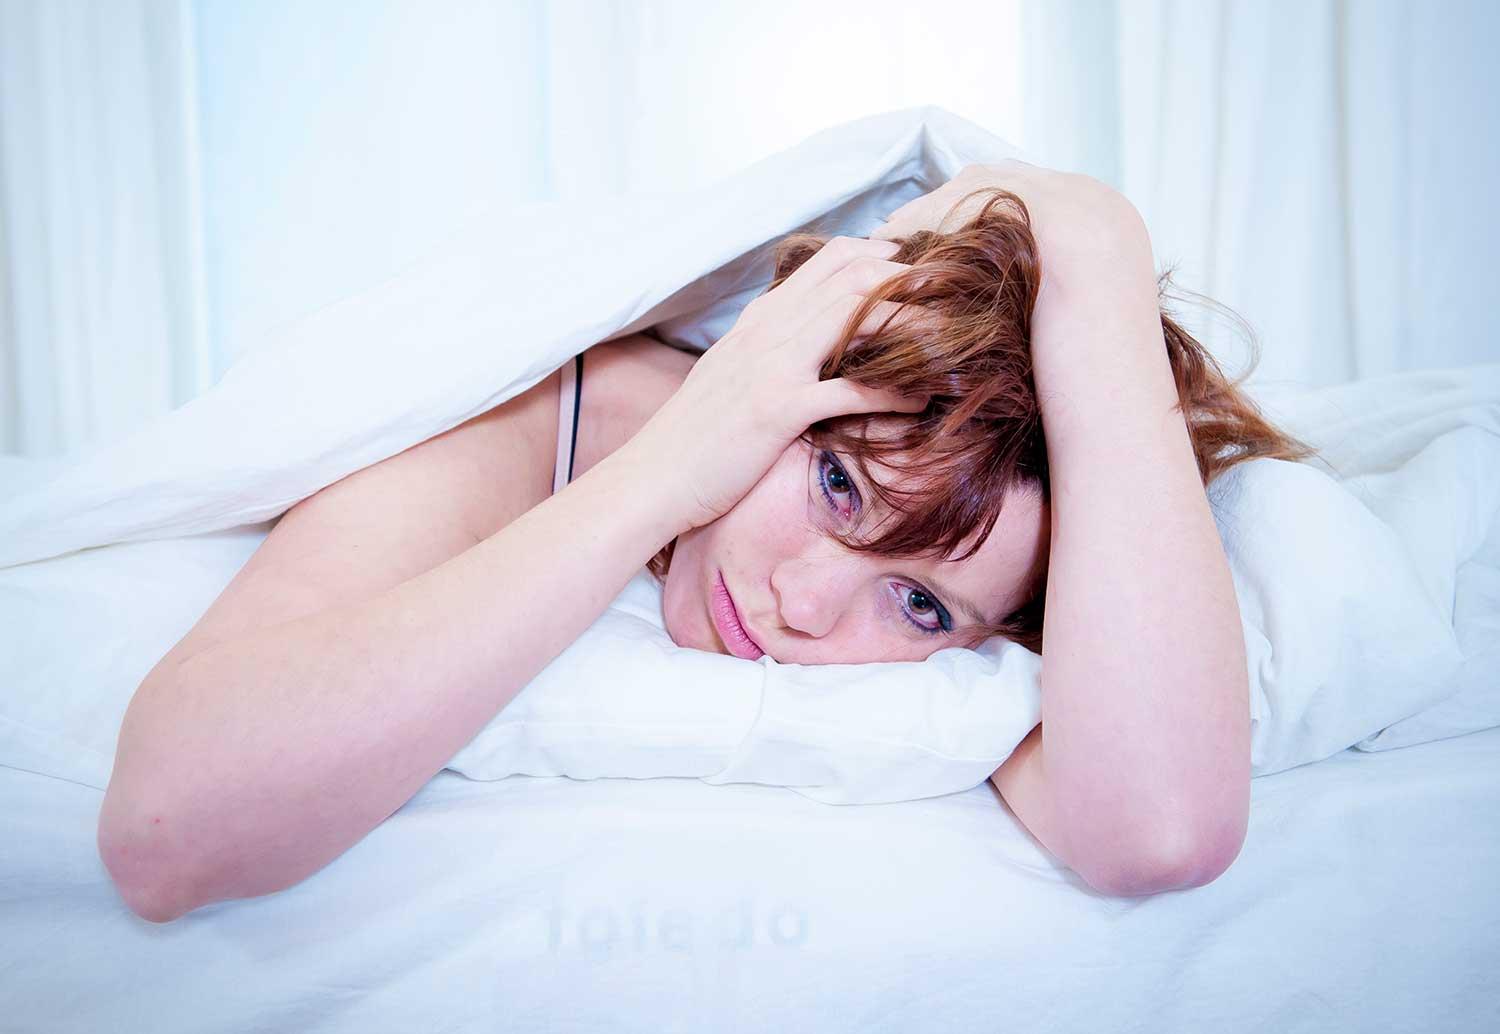 Sömnproblem är mycket kostsamma för samhället. Den som sover illa blir lättare sjuk eller somnar bakom ratten.